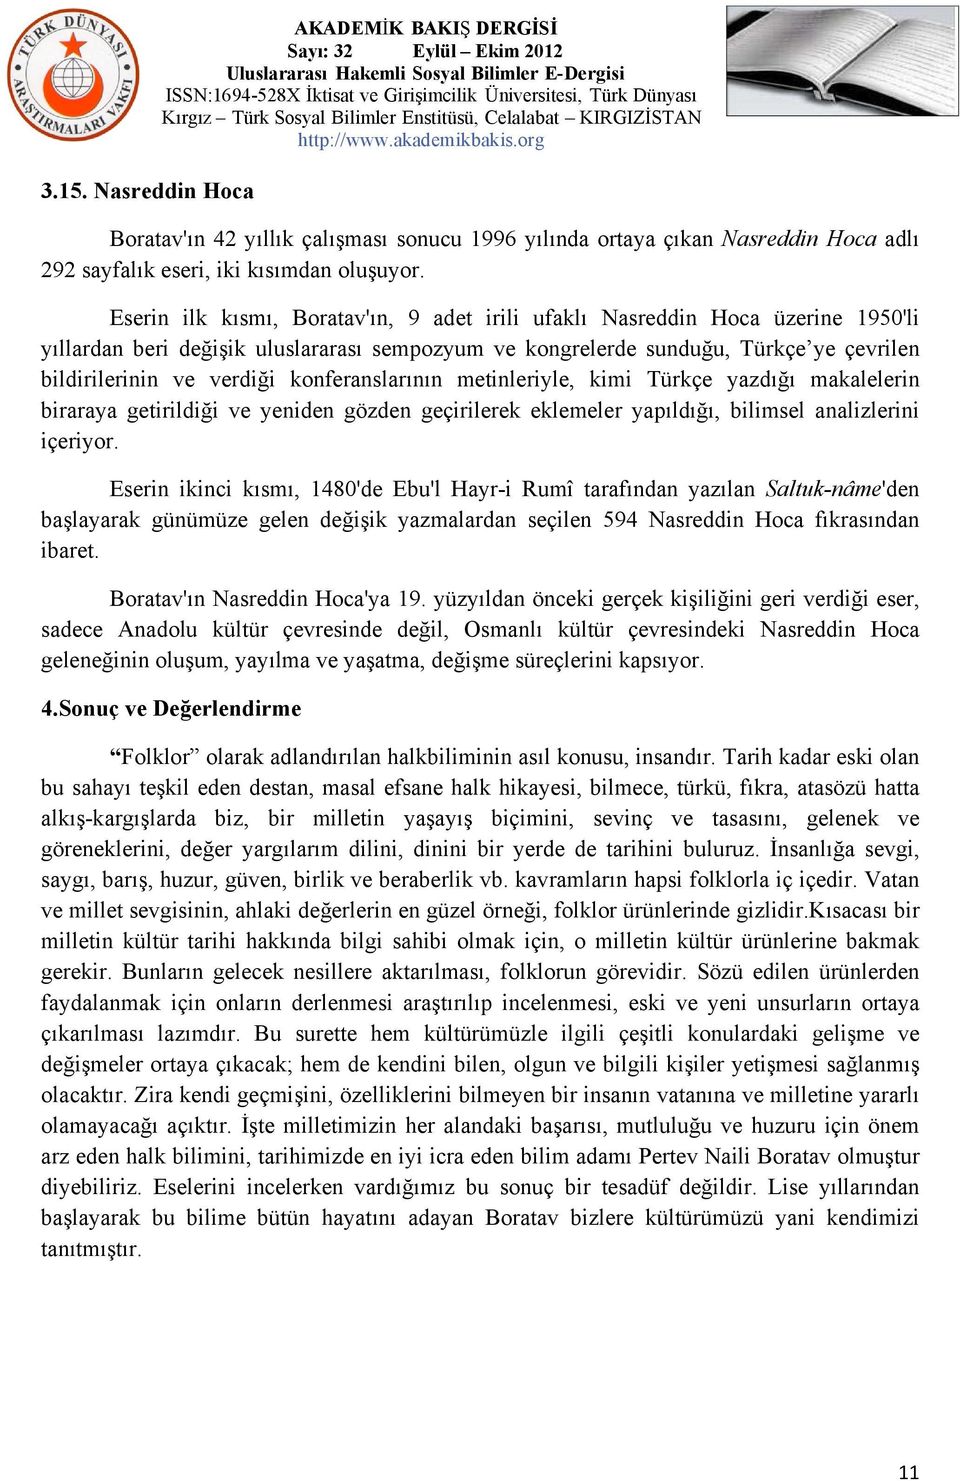 konferanslarının metinleriyle, kimi Türkçe yazdığı makalelerin biraraya getirildiği ve yeniden gözden geçirilerek eklemeler yapıldığı, bilimsel analizlerini içeriyor.